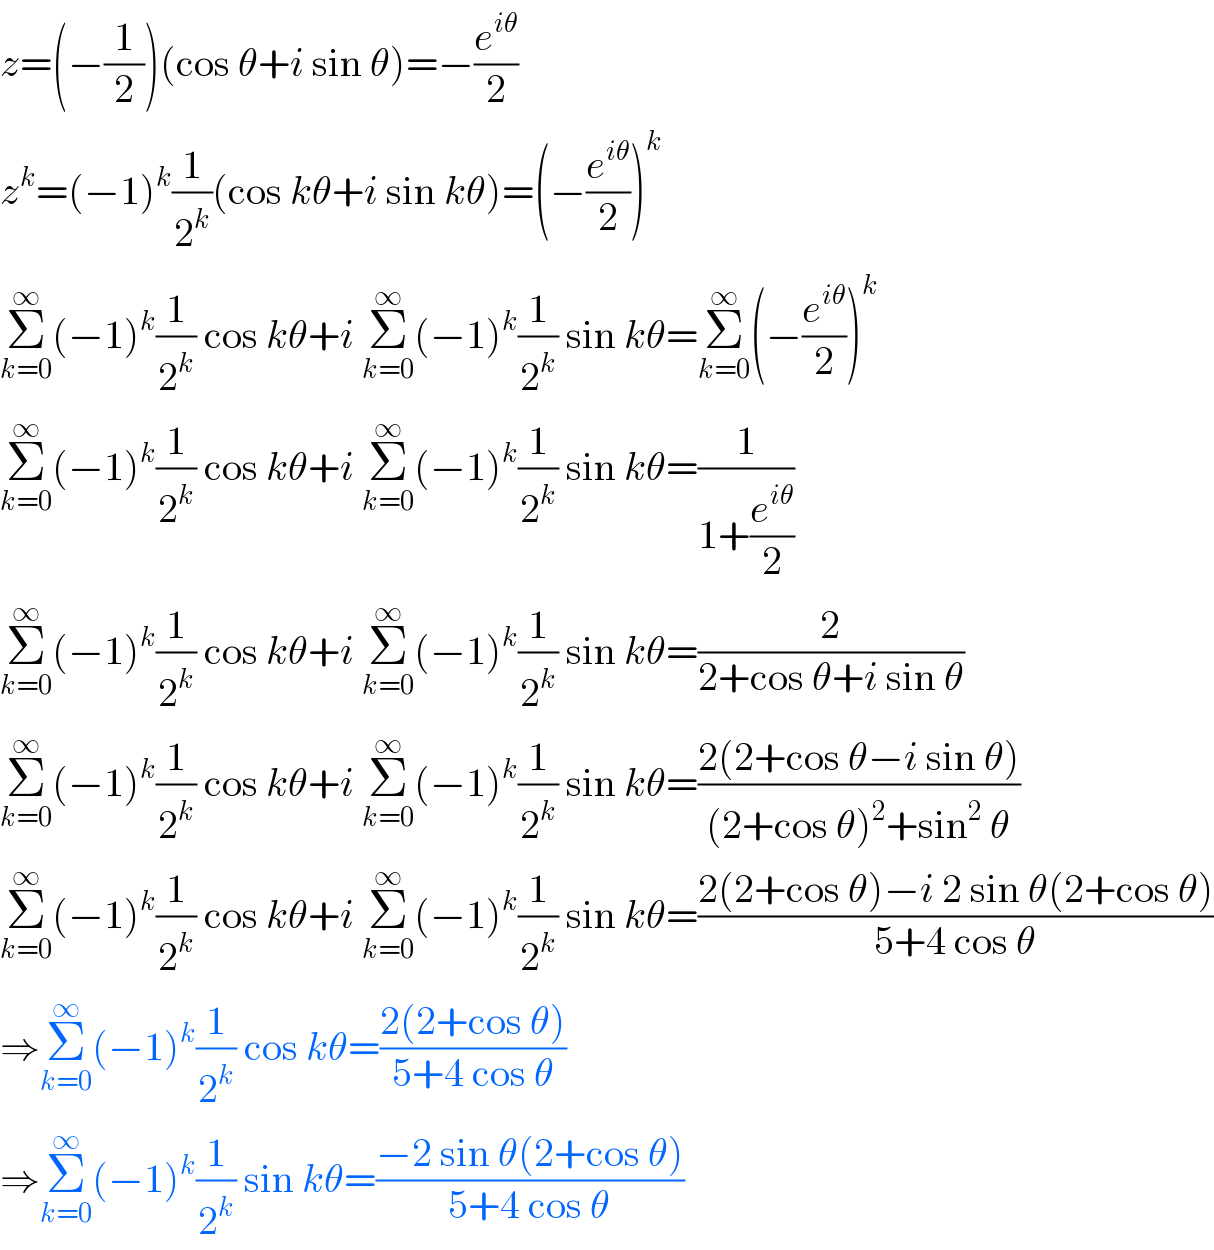 z=(−(1/2))(cos θ+i sin θ)=−(e^(iθ) /2)  z^k =(−1)^k (1/2^k )(cos kθ+i sin kθ)=(−(e^(iθ) /2))^k   Σ_(k=0) ^∞ (−1)^k (1/2^k ) cos kθ+i Σ_(k=0) ^∞ (−1)^k (1/2^k ) sin kθ=Σ_(k=0) ^∞ (−(e^(iθ) /2))^k   Σ_(k=0) ^∞ (−1)^k (1/2^k ) cos kθ+i Σ_(k=0) ^∞ (−1)^k (1/2^k ) sin kθ=(1/(1+(e^(iθ) /2)))  Σ_(k=0) ^∞ (−1)^k (1/2^k ) cos kθ+i Σ_(k=0) ^∞ (−1)^k (1/2^k ) sin kθ=(2/(2+cos θ+i sin θ))  Σ_(k=0) ^∞ (−1)^k (1/2^k ) cos kθ+i Σ_(k=0) ^∞ (−1)^k (1/2^k ) sin kθ=((2(2+cos θ−i sin θ))/((2+cos θ)^2 +sin^2  θ))  Σ_(k=0) ^∞ (−1)^k (1/2^k ) cos kθ+i Σ_(k=0) ^∞ (−1)^k (1/2^k ) sin kθ=((2(2+cos θ)−i 2 sin θ(2+cos θ))/(5+4 cos θ))  ⇒Σ_(k=0) ^∞ (−1)^k (1/2^k ) cos kθ=((2(2+cos θ))/(5+4 cos θ))  ⇒Σ_(k=0) ^∞ (−1)^k (1/2^k ) sin kθ=((−2 sin θ(2+cos θ))/(5+4 cos θ))  